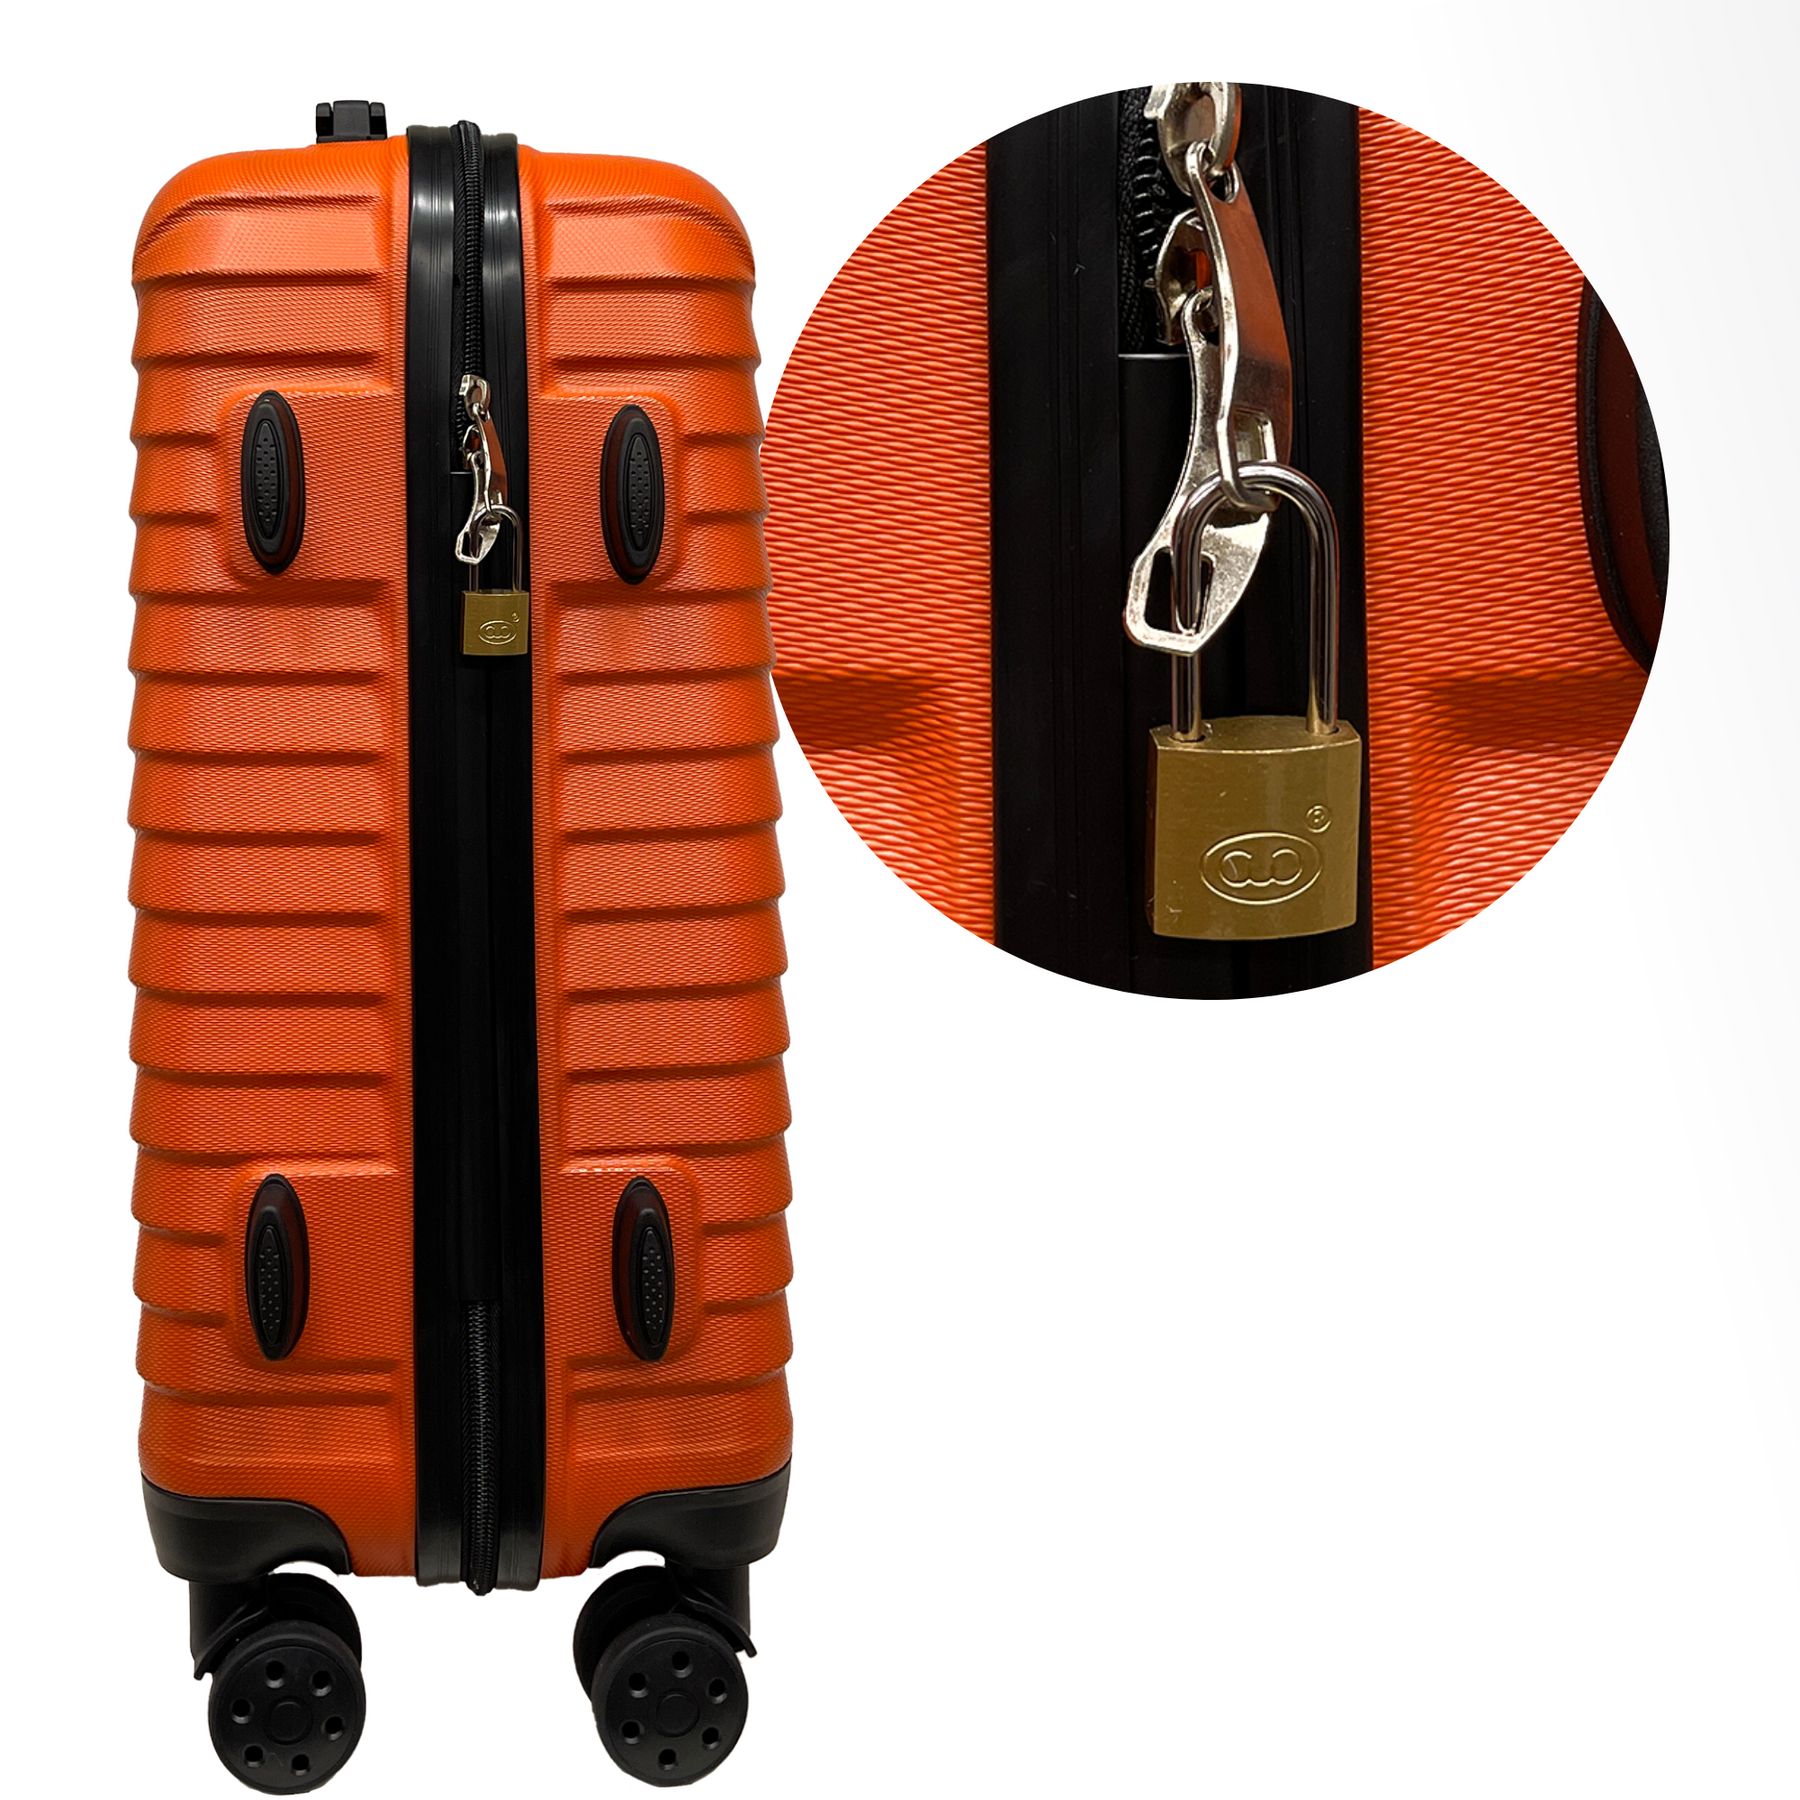 Lås med 25 mm bøjle og 2 nøgler - Sikkerhed til kuffert, bagage, rejsetaske og rygsække